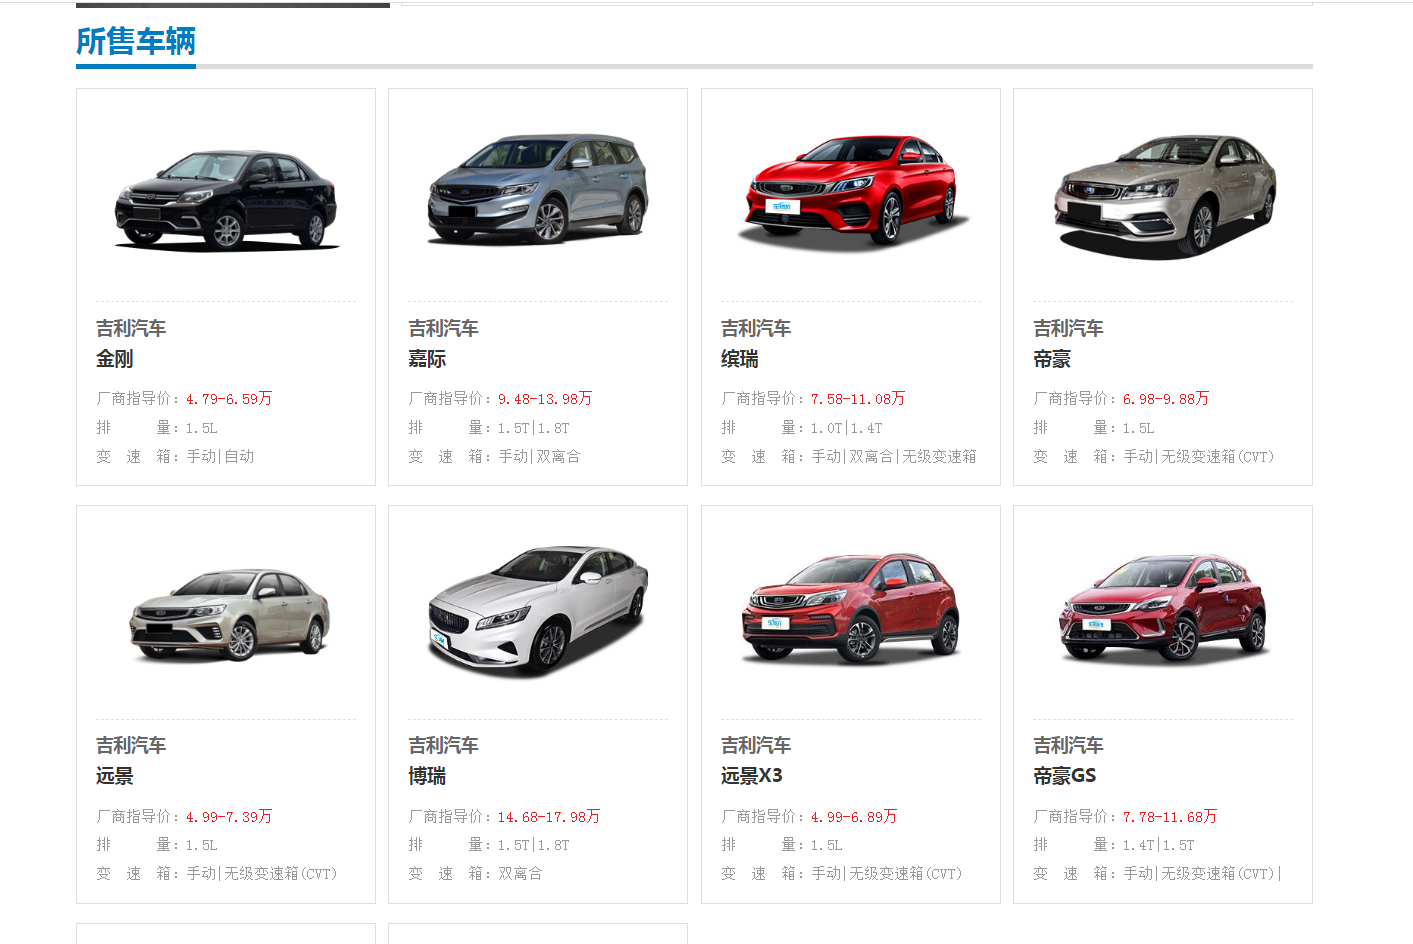 重庆市创悦汽车销售有限公司 环境照片活动图片